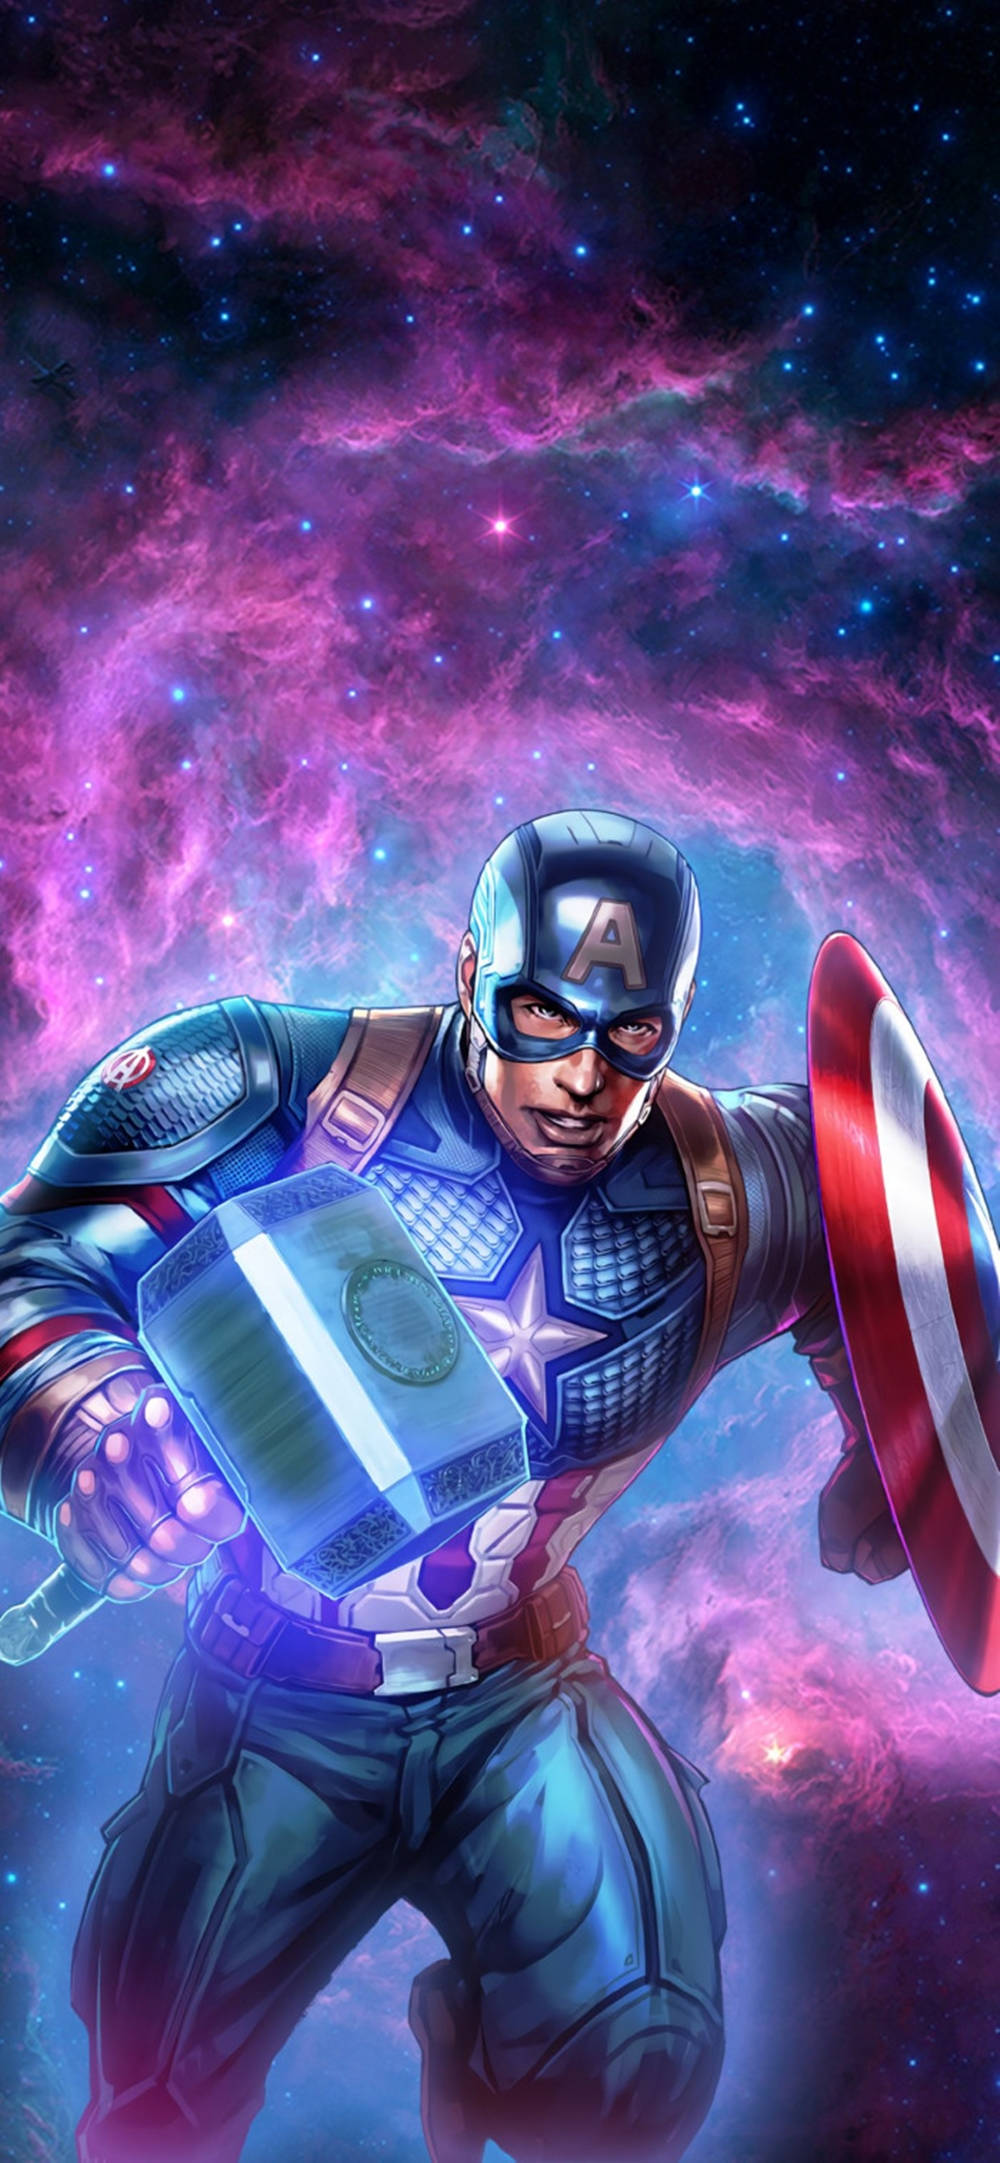 Free Captain America Shield Wallpaper Downloads, [200+] Captain America  Shield Wallpapers for FREE 